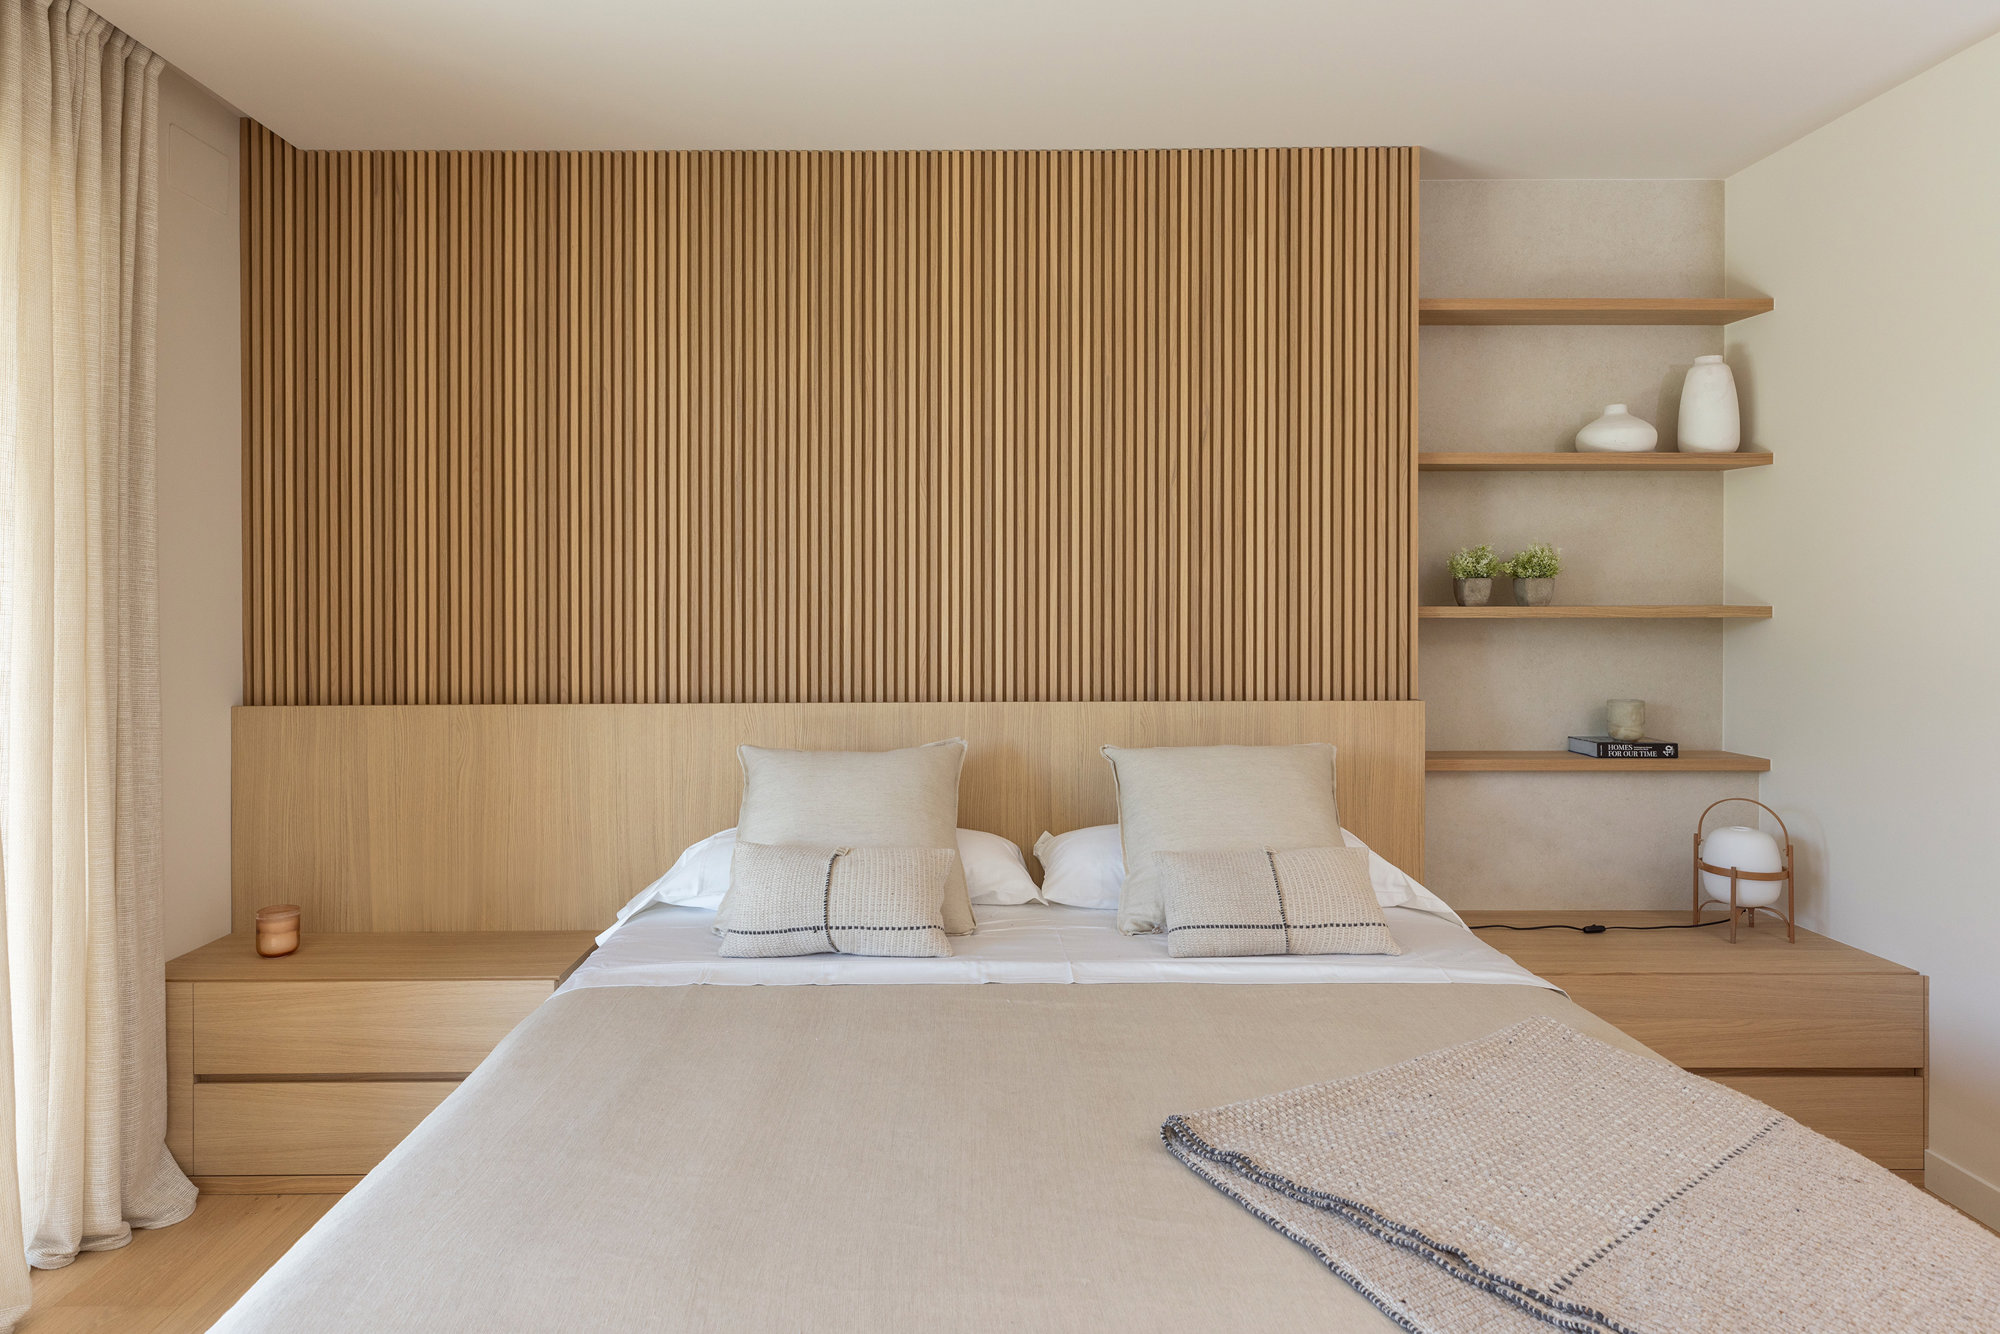 Dormitorio con cabecero de madera y mesitas y estantería integradas.